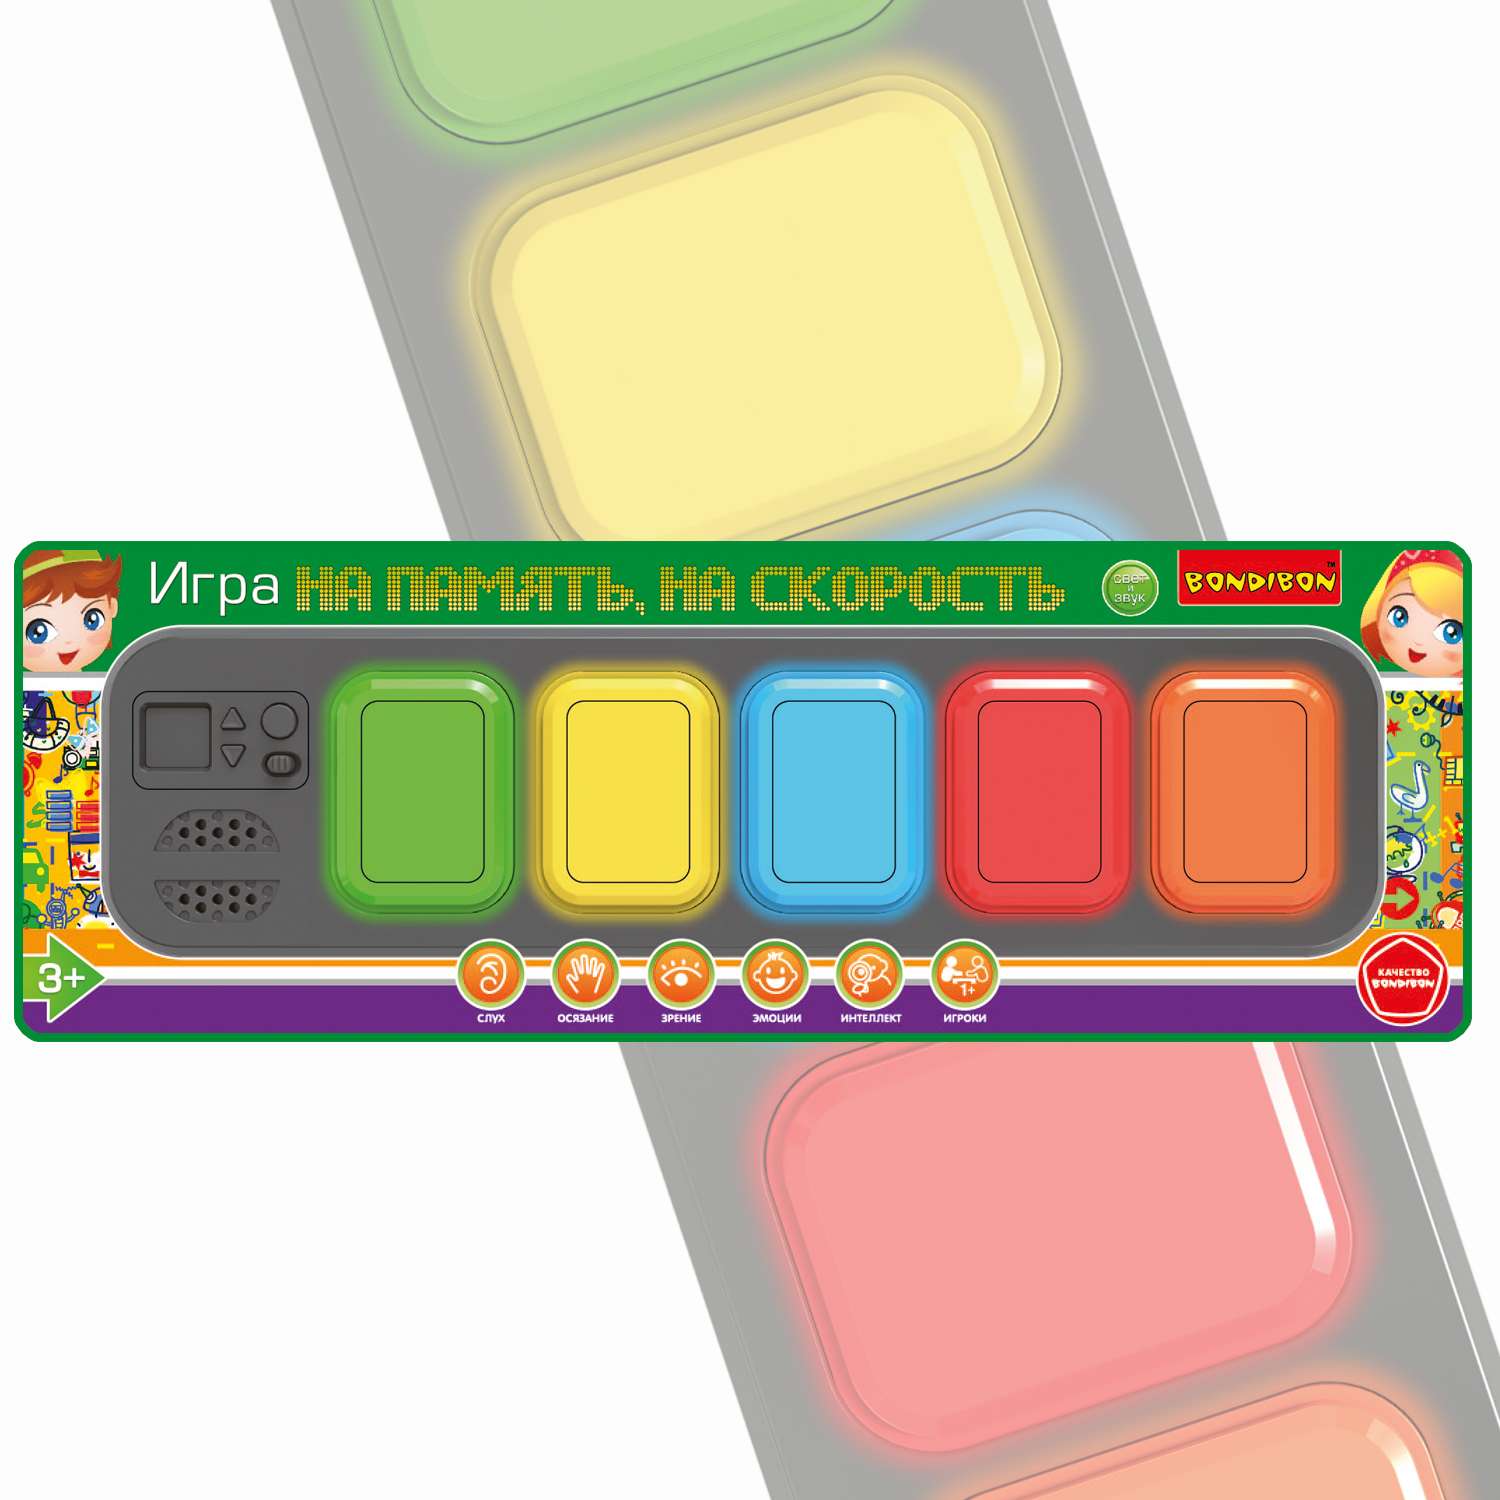 Настольная семейная игра BONDIBON На память На скорость 4 в 1 на батарейках со свето-звуковыми эффектами прямоугольная - фото 2